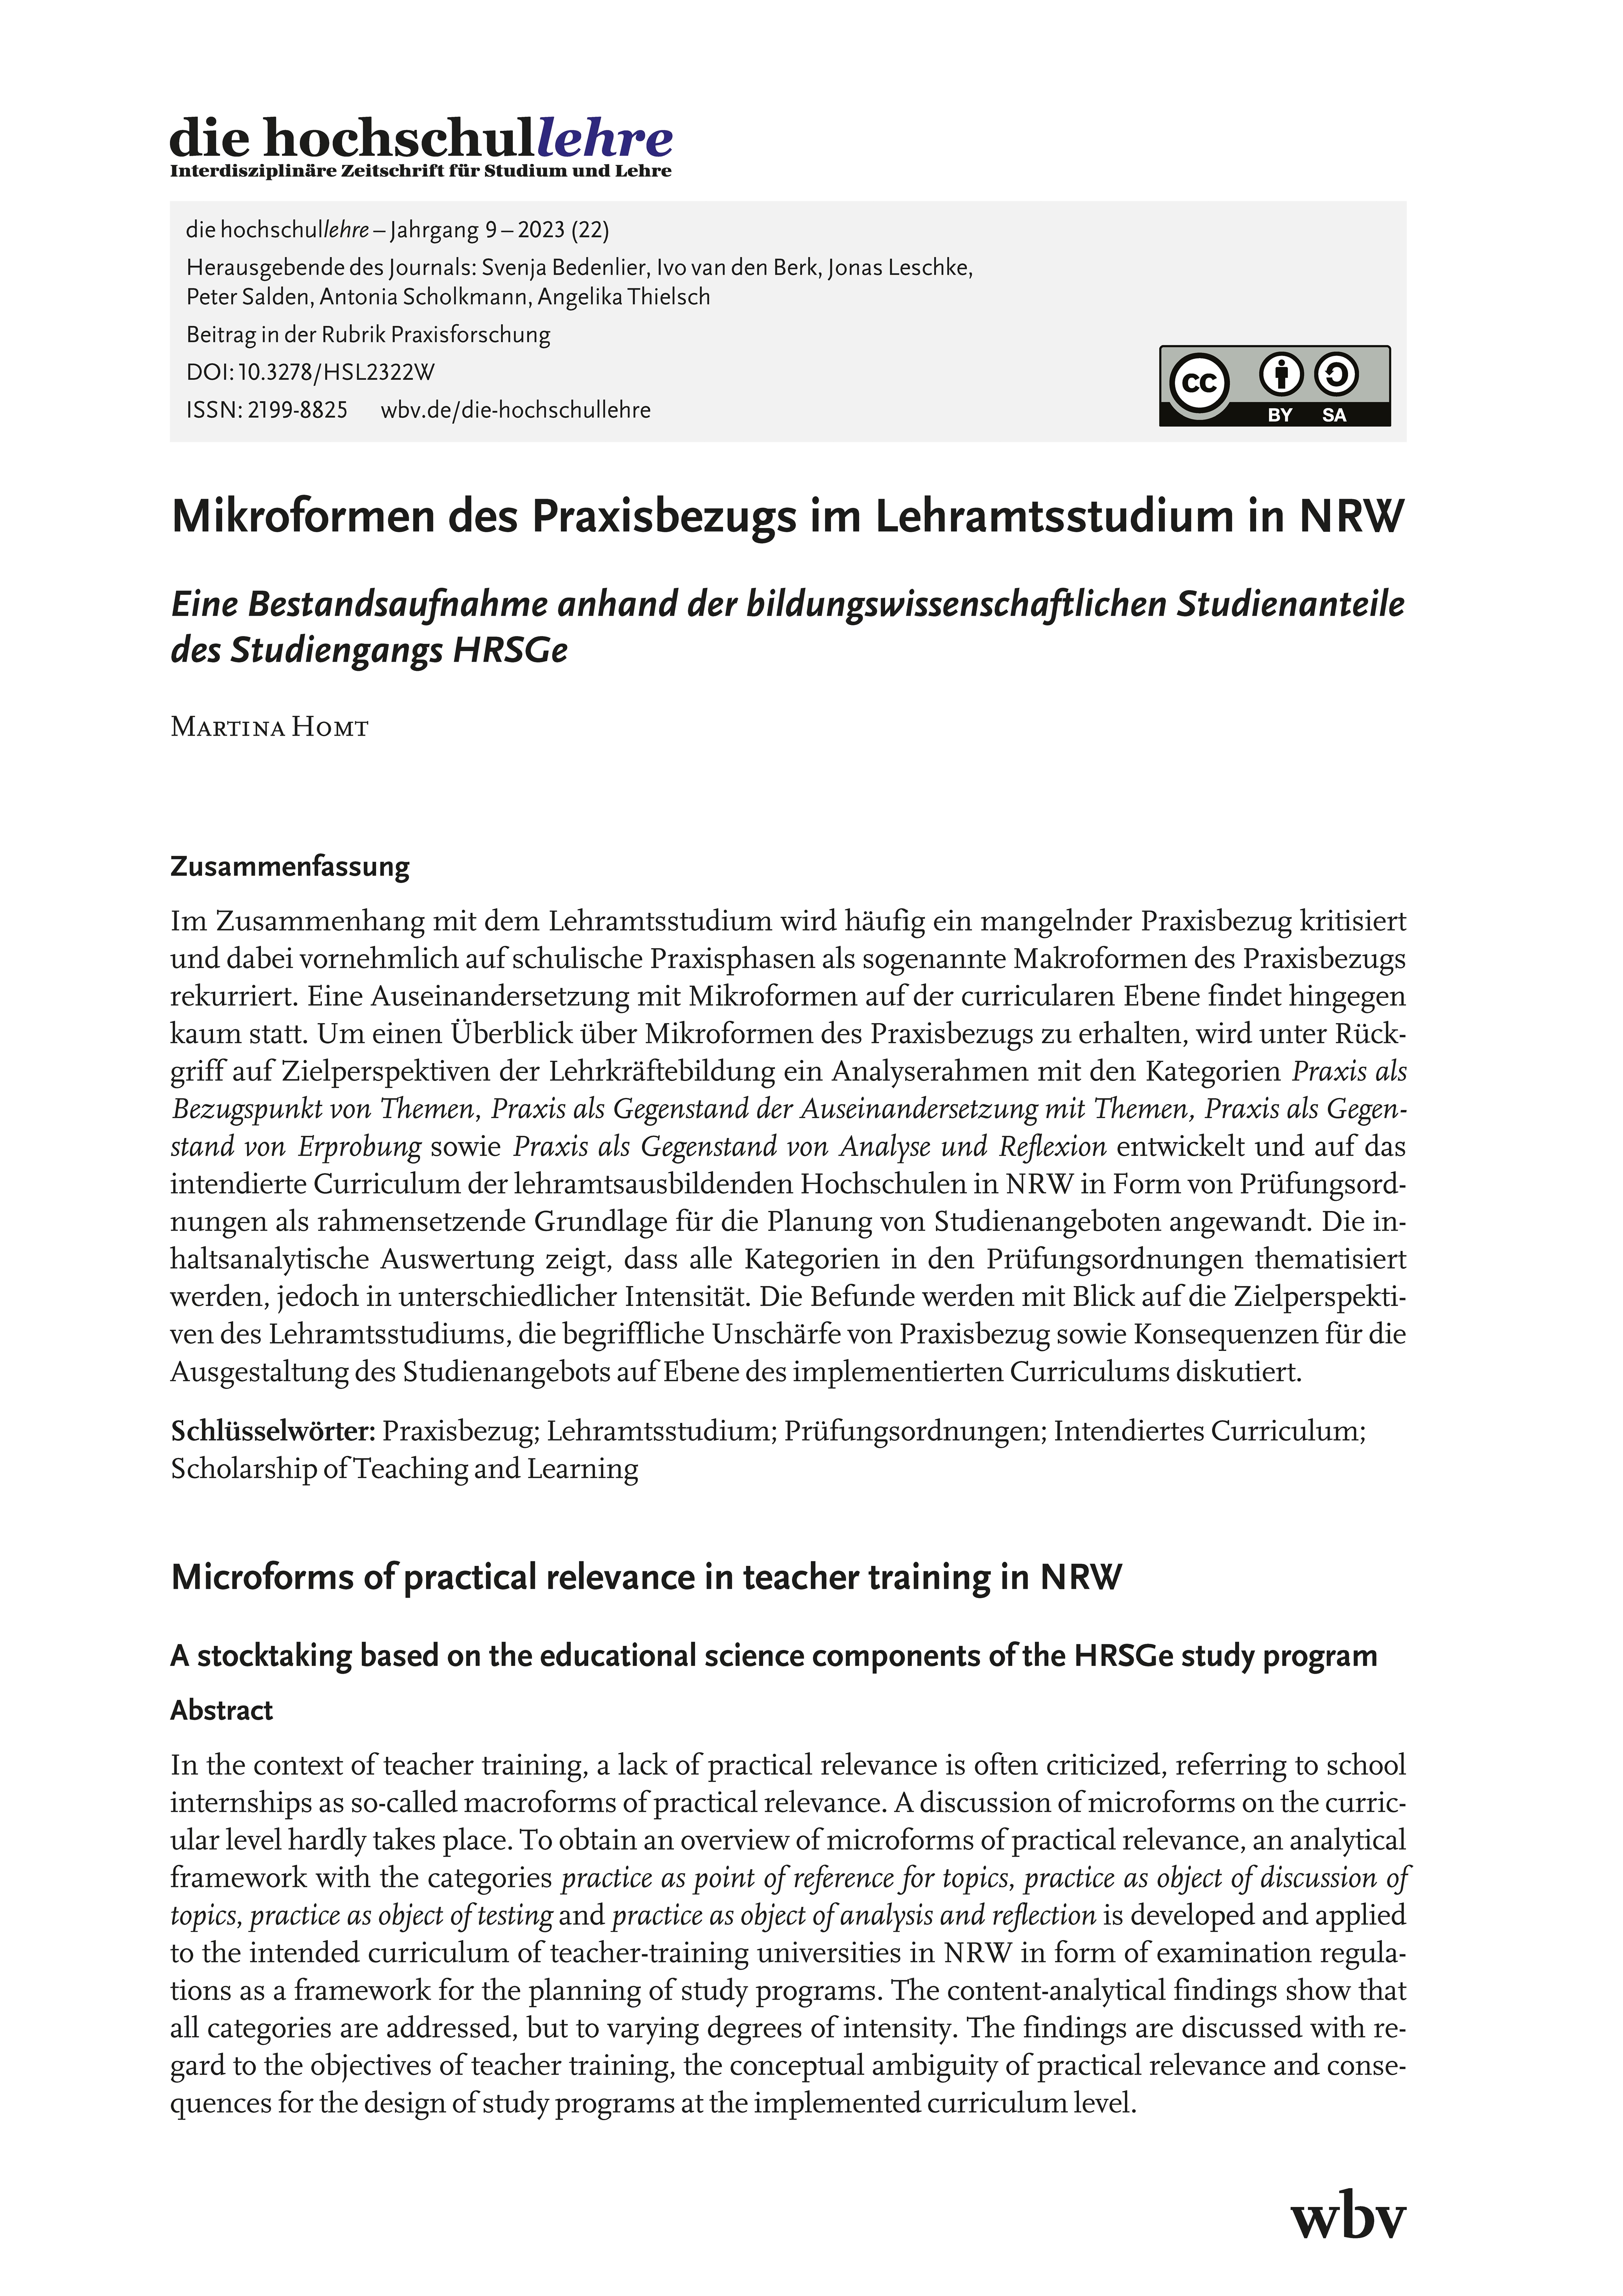 Mikroformen des Praxisbezugs im Lehramtsstudium in NRW. Eine Bestandsaufnahme anhand der bildungswissenschaftlichen Studienanteile des Studiengangs HRSGe